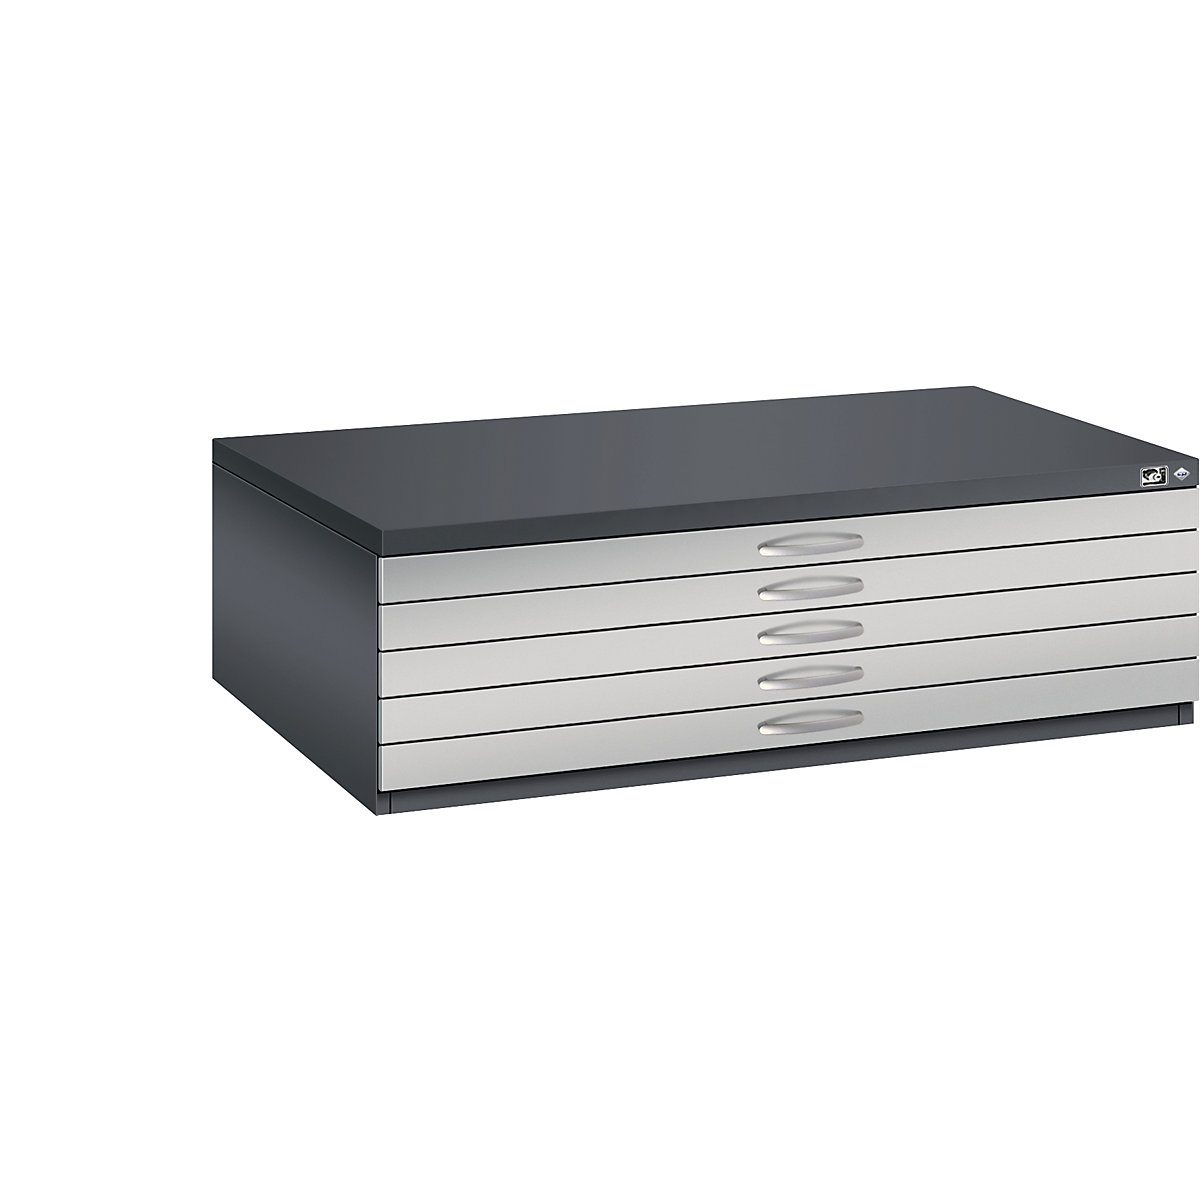 C+P Zeichnungsschrank, DIN A0, 5 Schubladen, Höhe 420 mm, schwarzgrau / weißaluminium